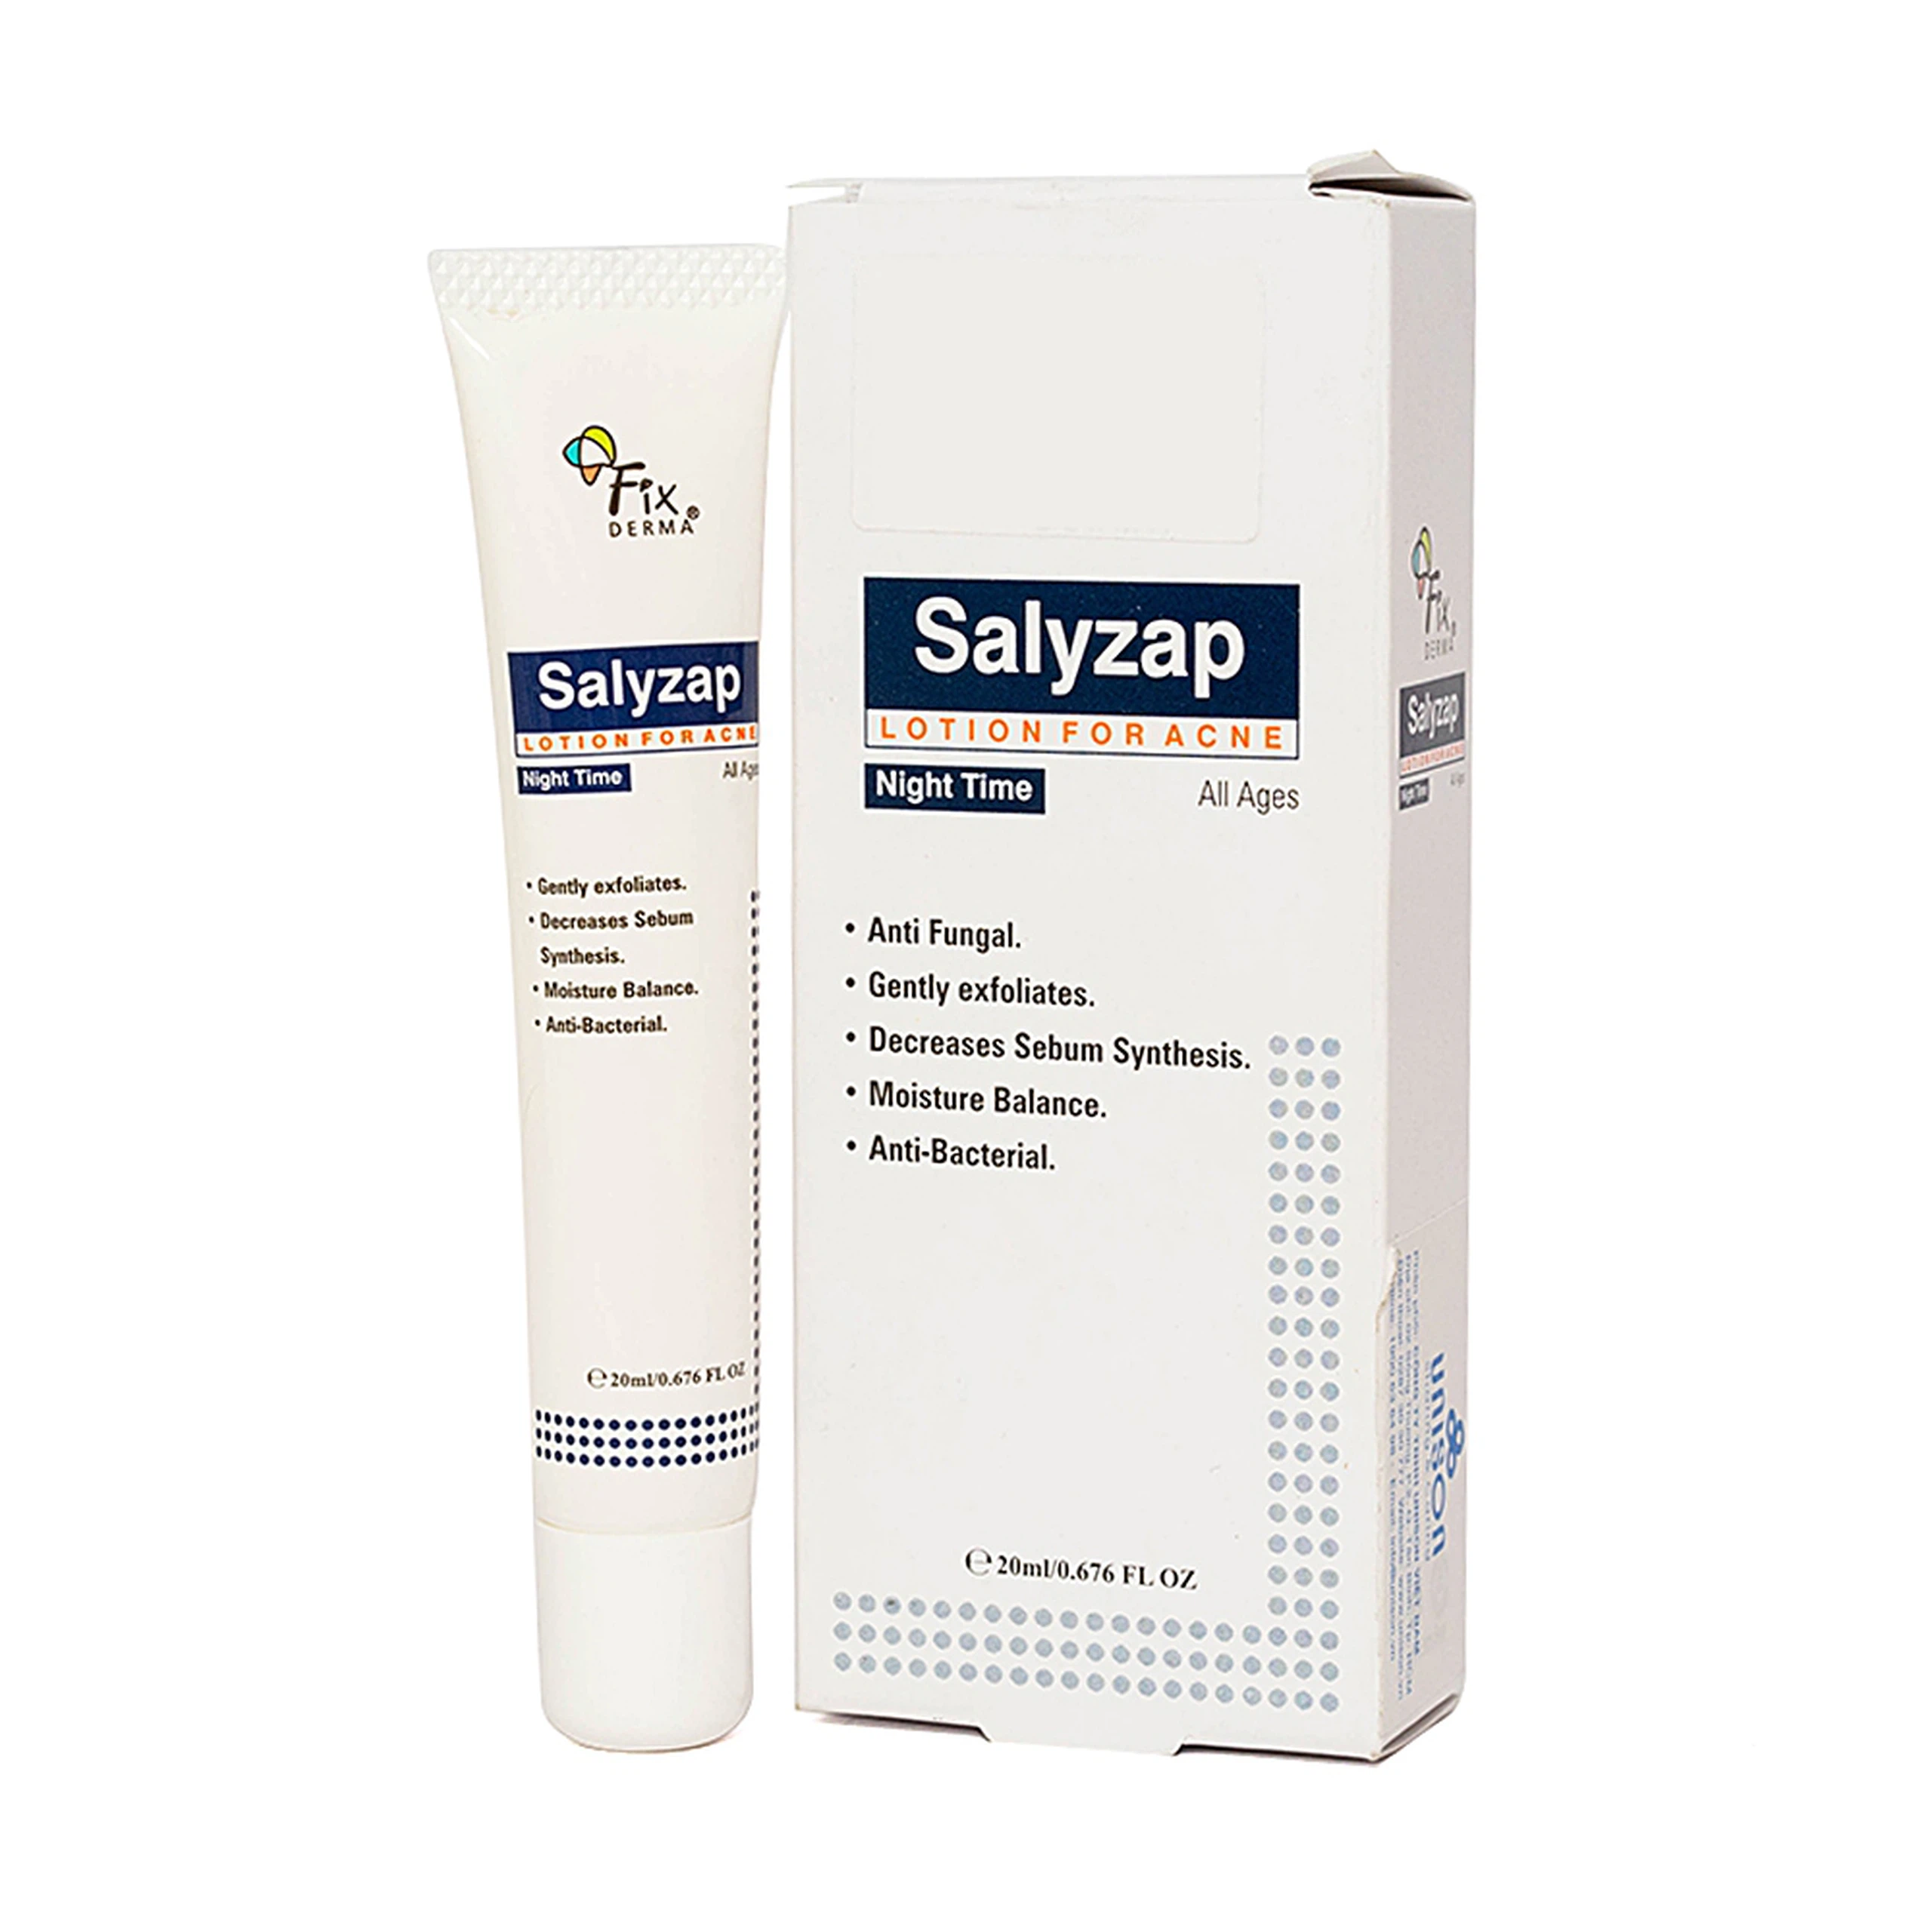 Lotion Fixderma Salyzap Lotion For Acne giảm mụn, ngăn ngừa hình thành nhân mụn mới (20ml)